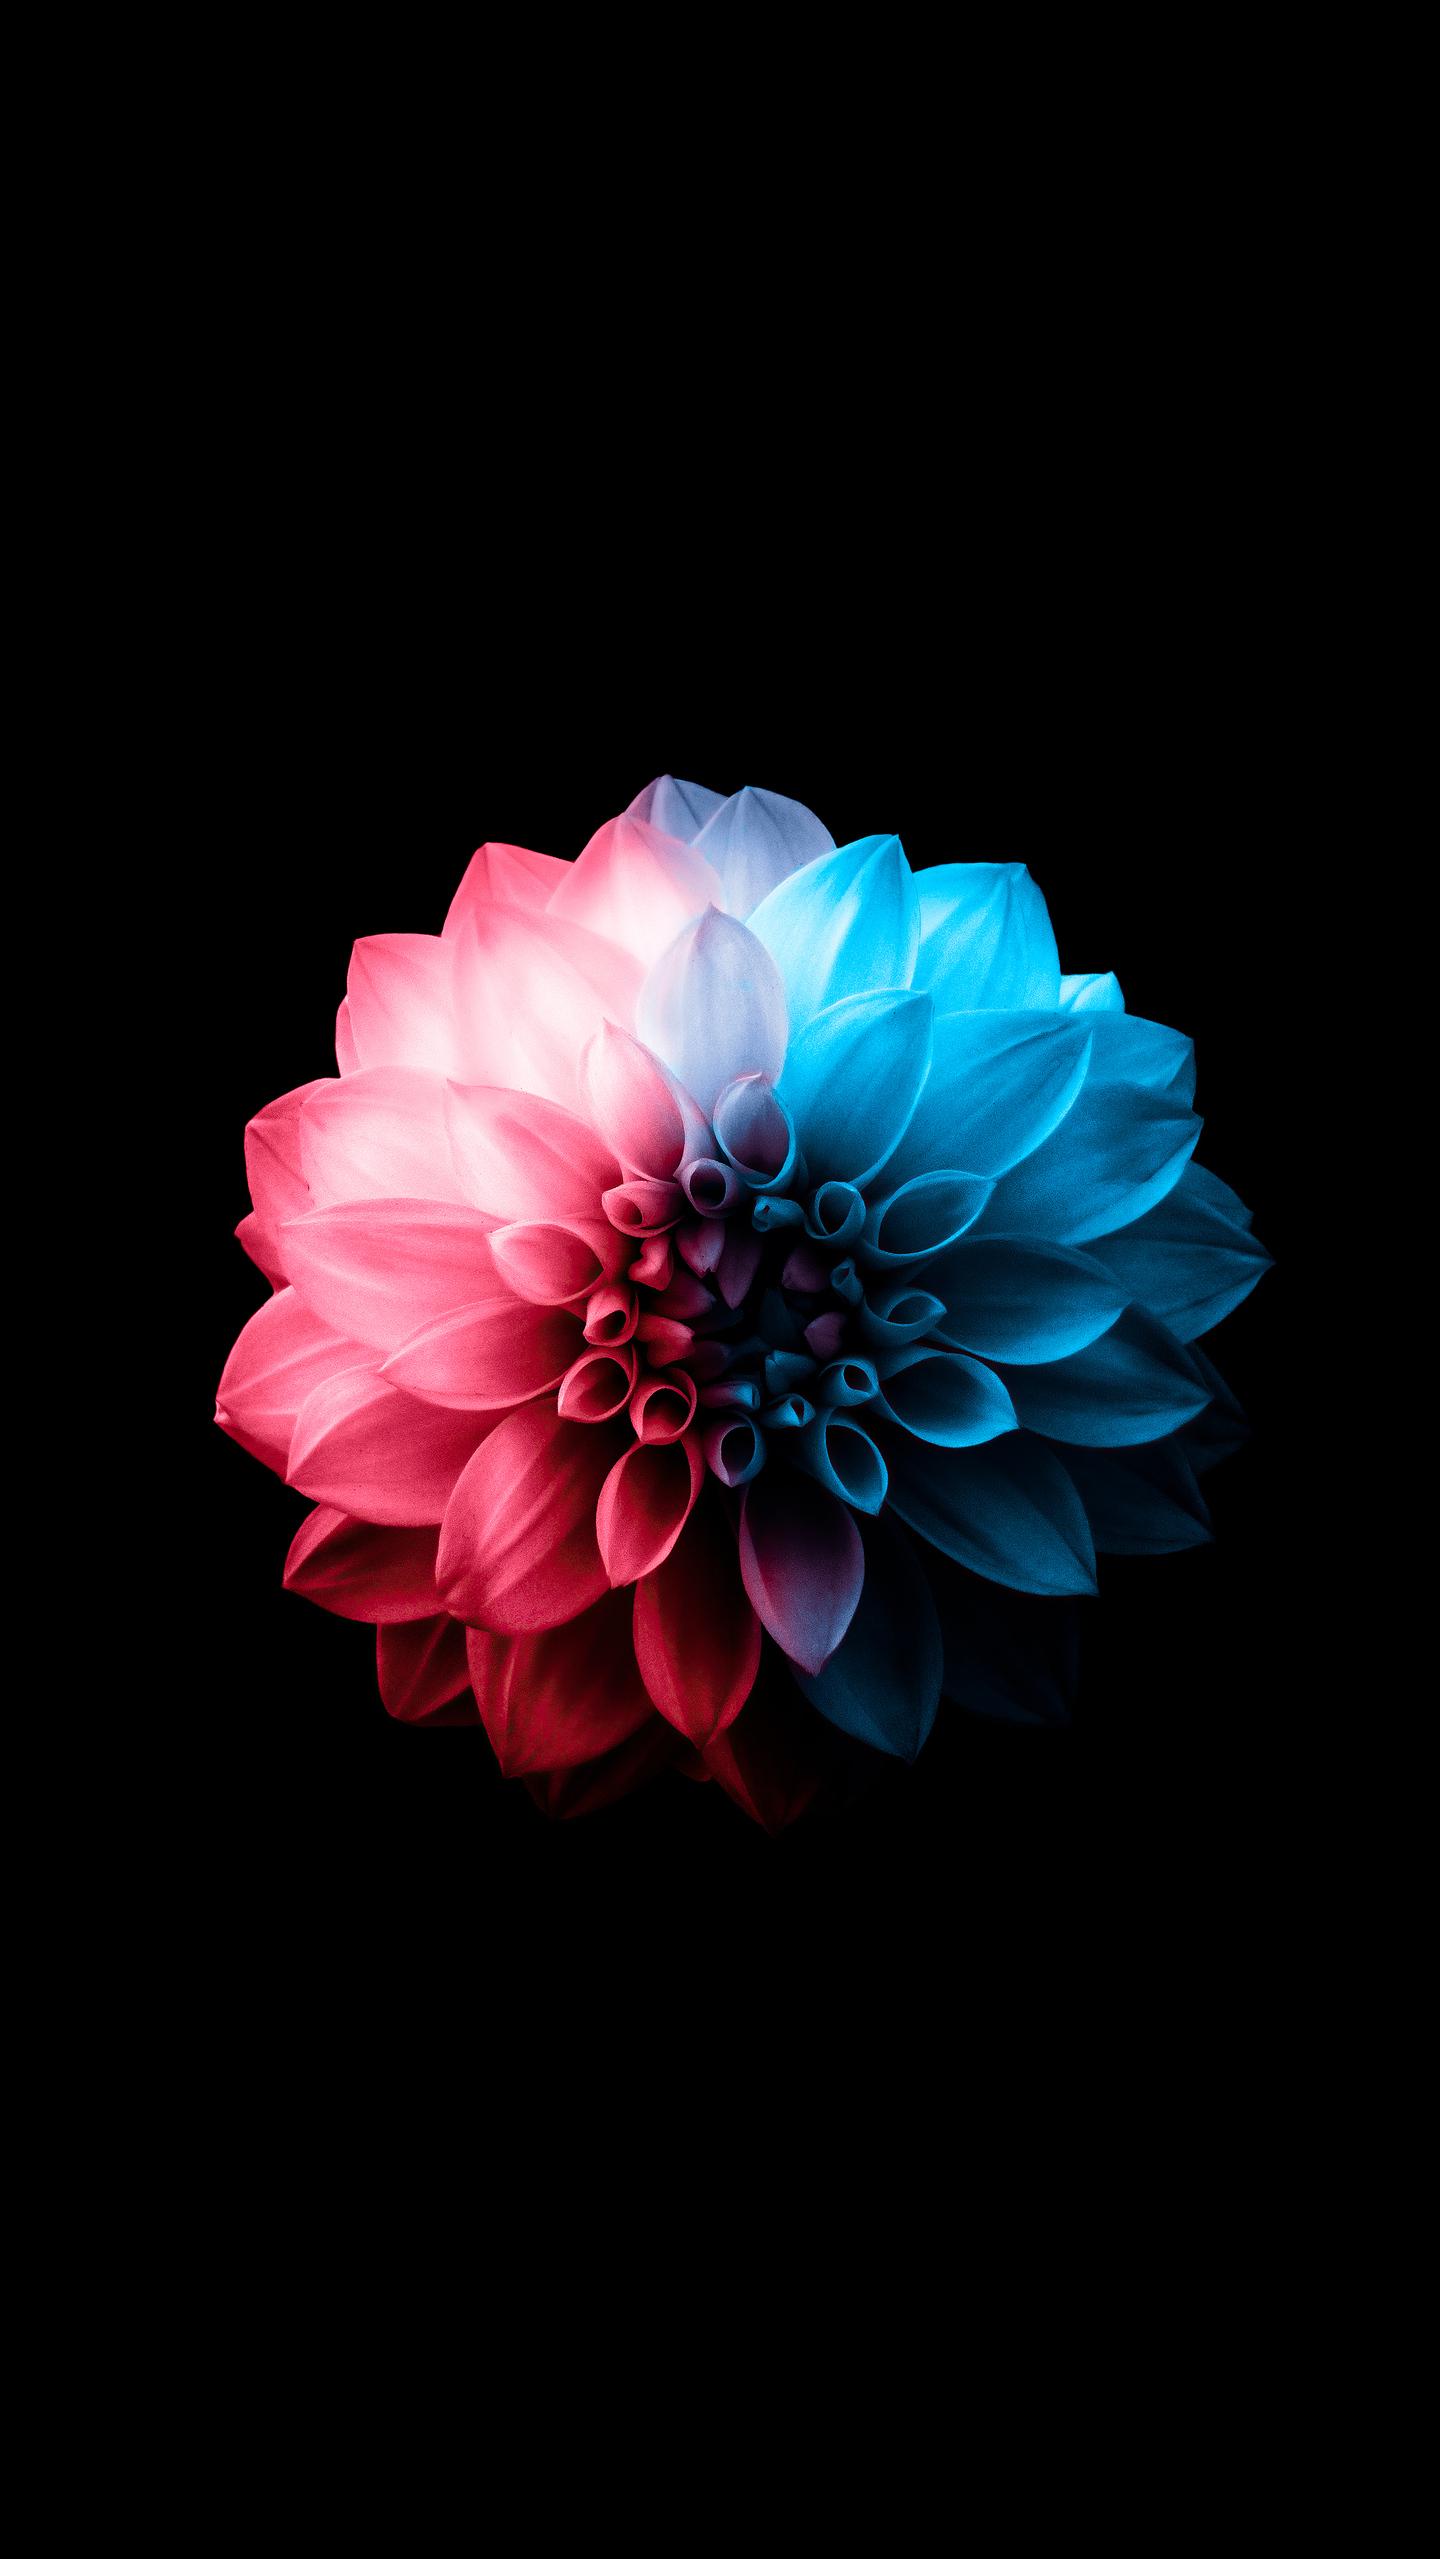 Flower Oled Dark 5k Samsung Galaxy S6 S7 Google Pixel